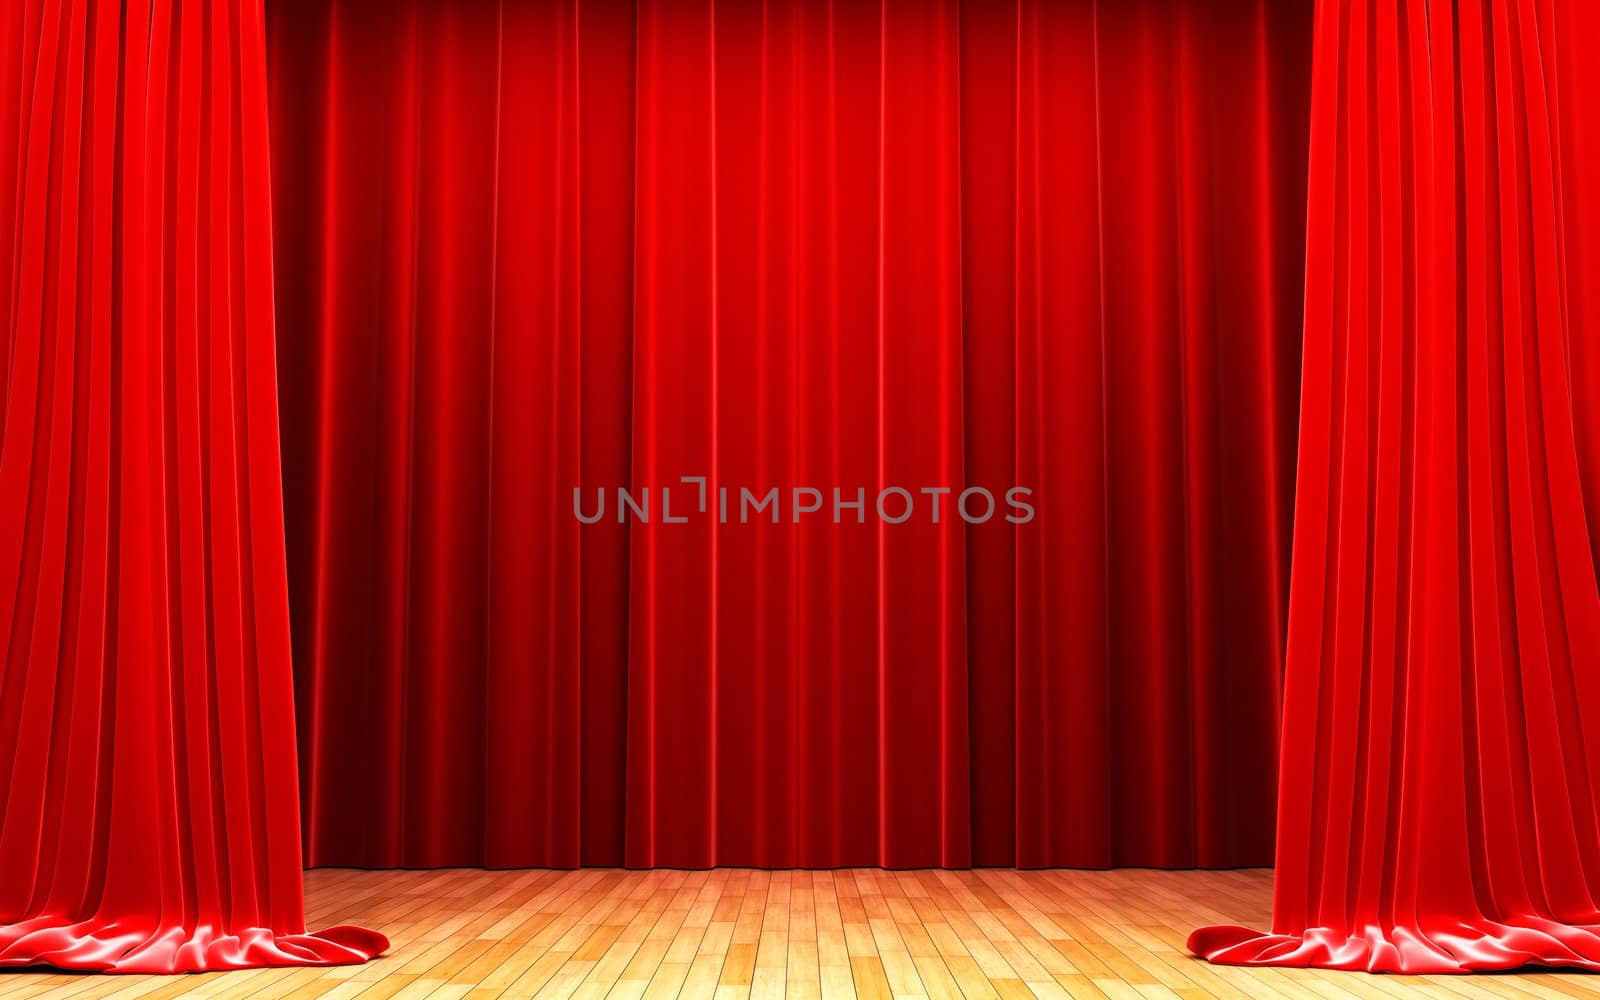 Red velvet curtain opening scene made in 3d